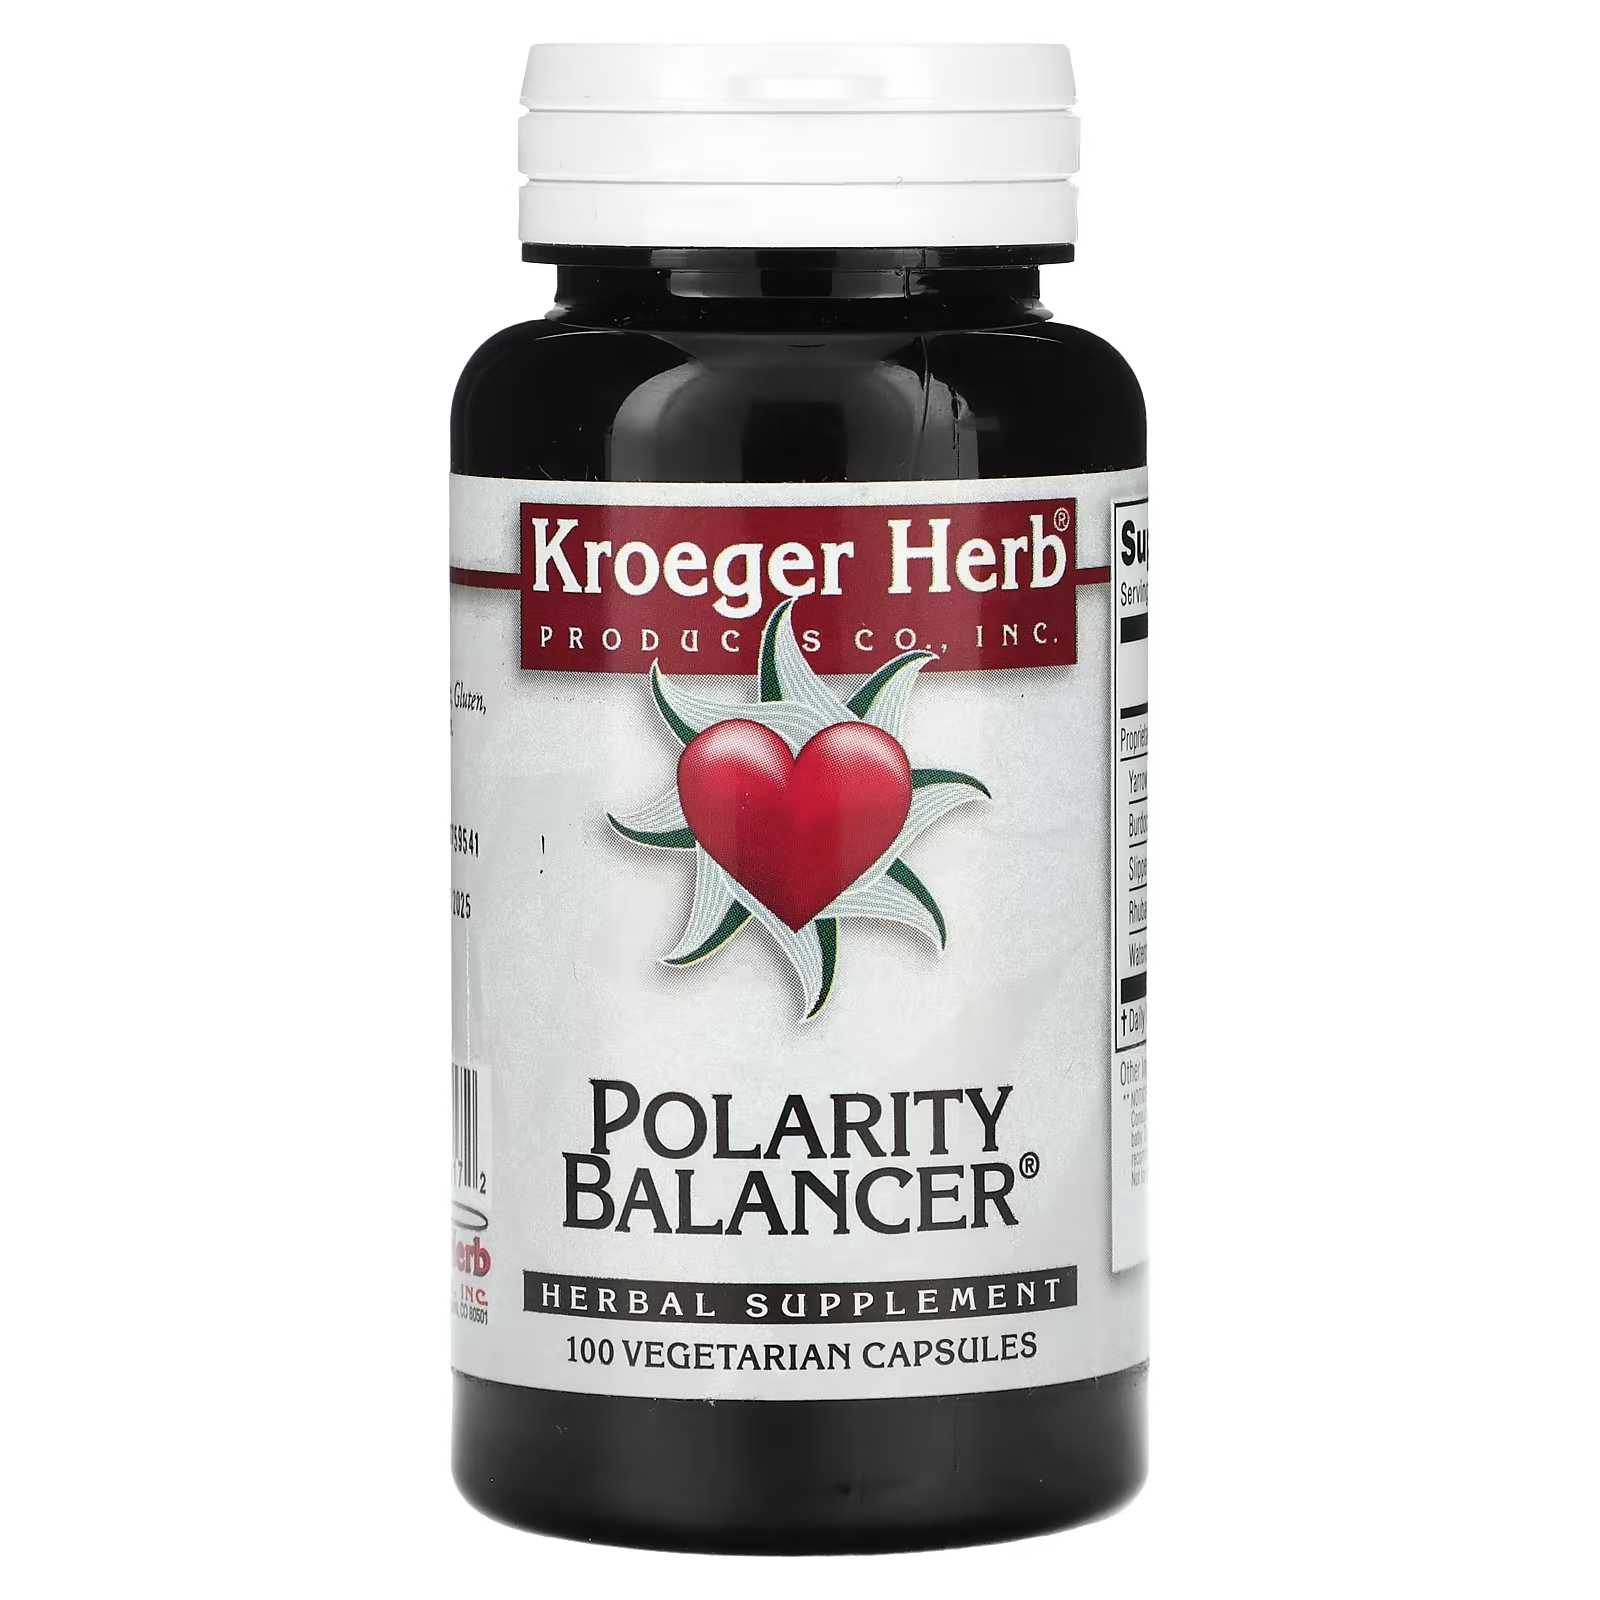 Растительная добавка Kroeger Herb Co балансировщик полярности, 100 капсул растительная добавка kroeger herb co liver formula 100 капсул